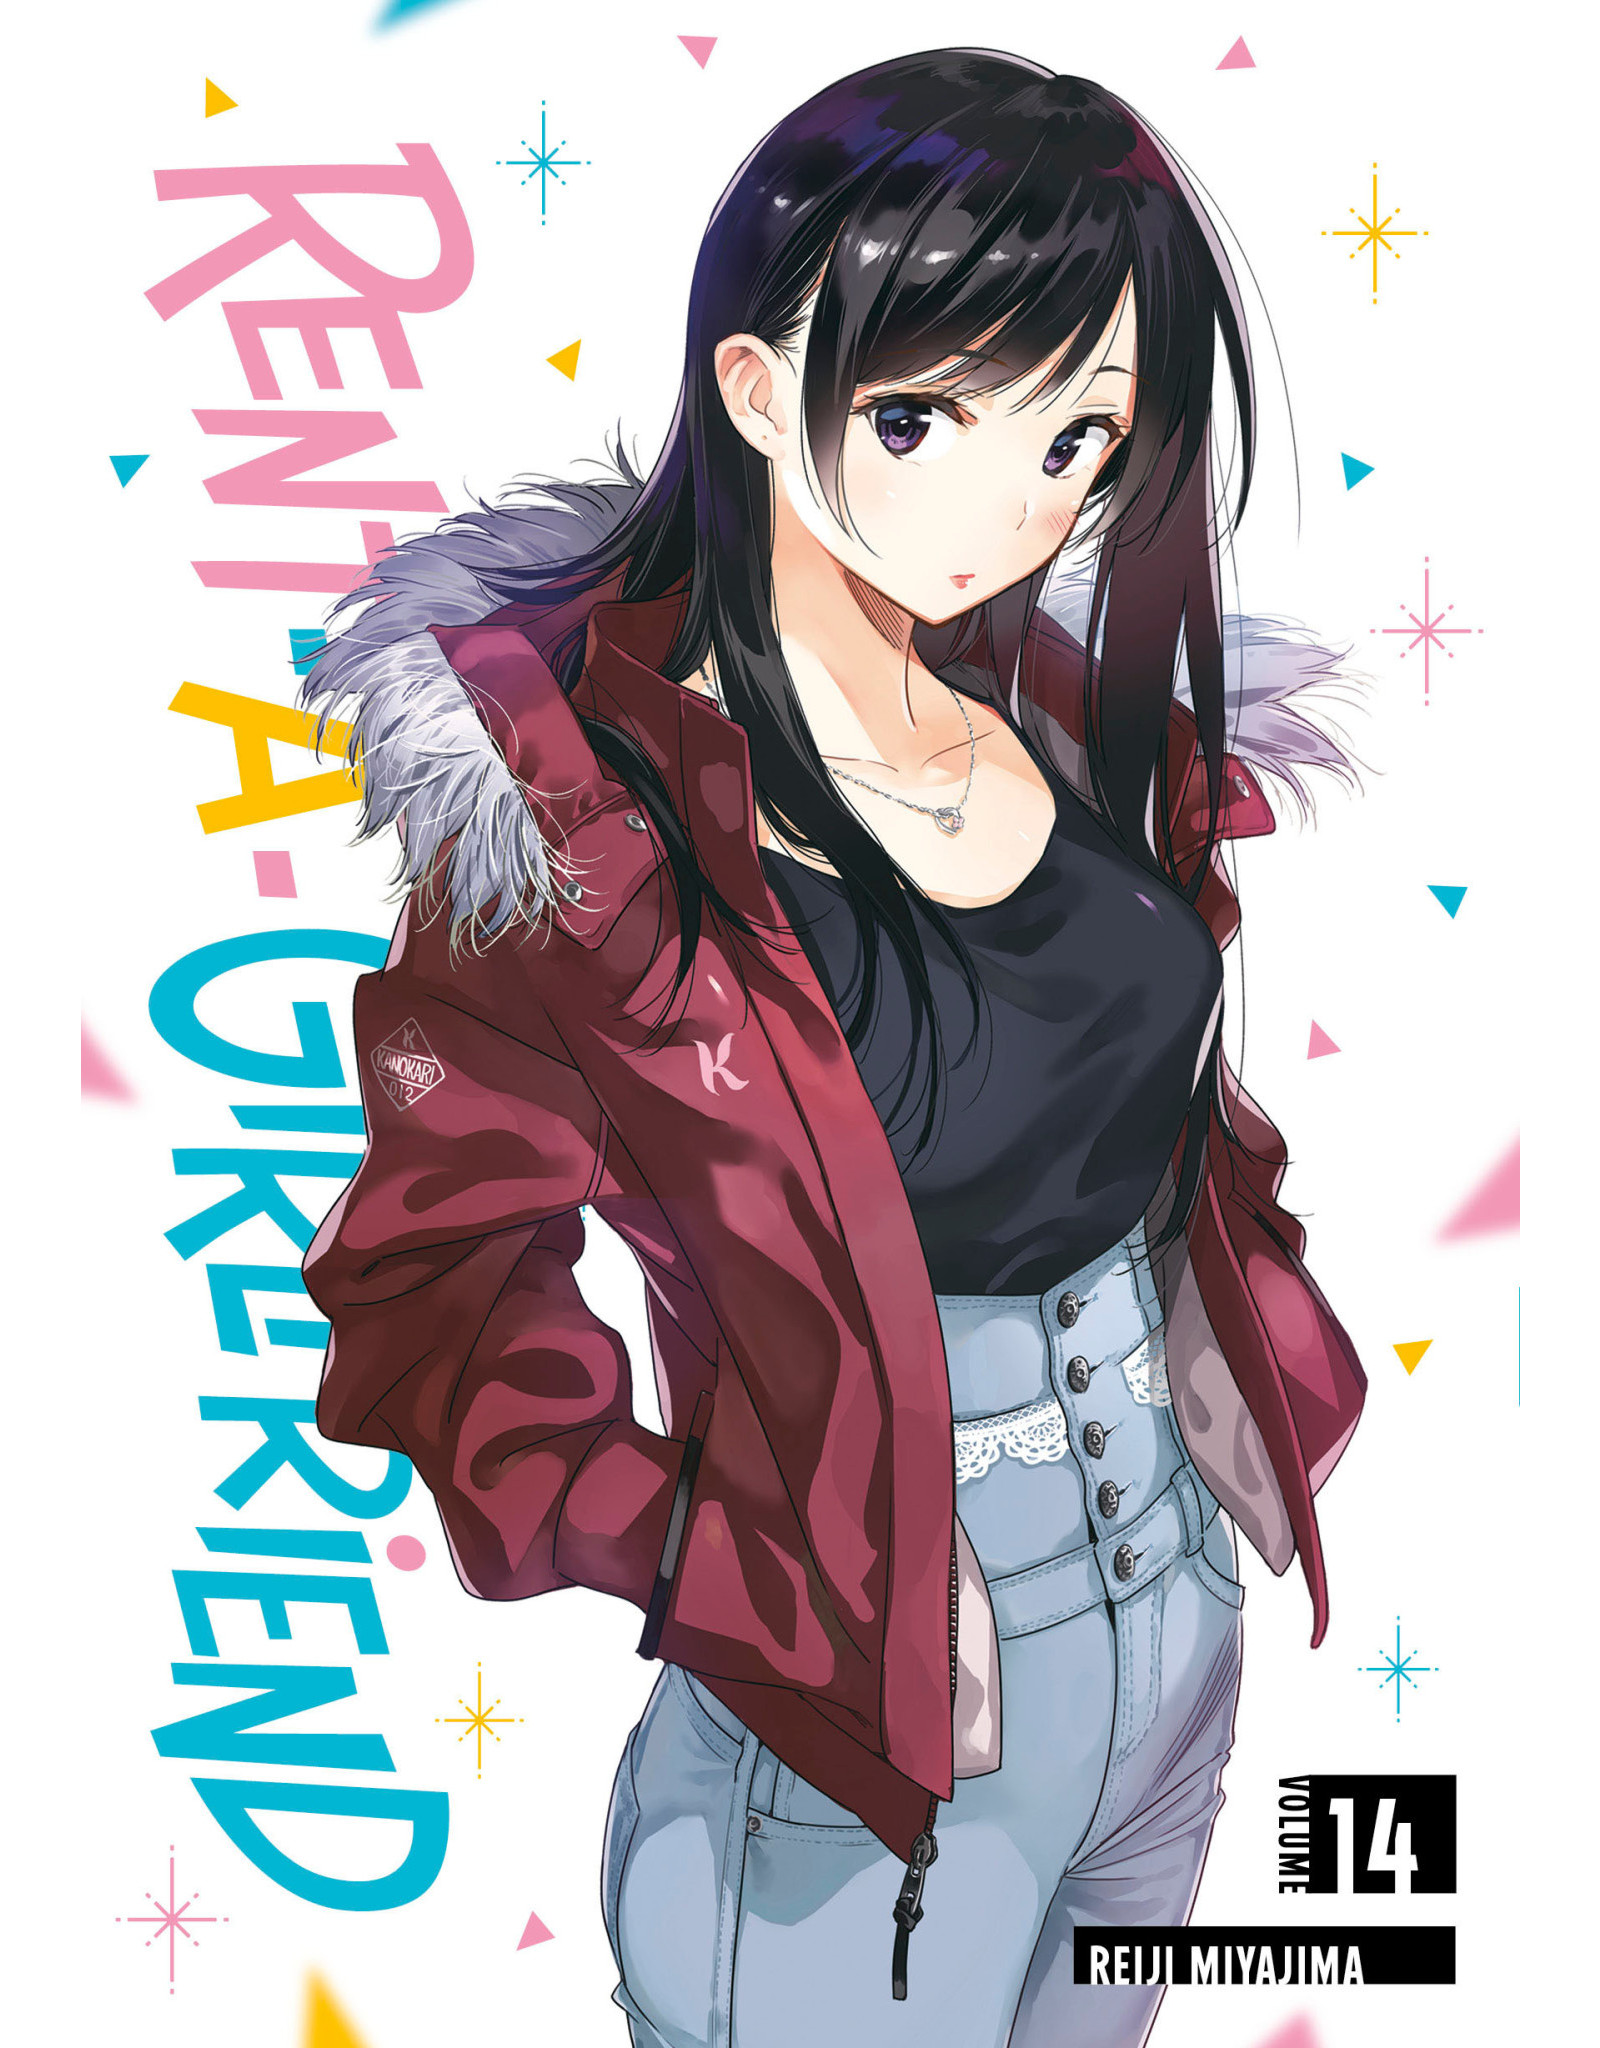 Rent-A-Girlfriend 14 (Engelstalig) - Manga